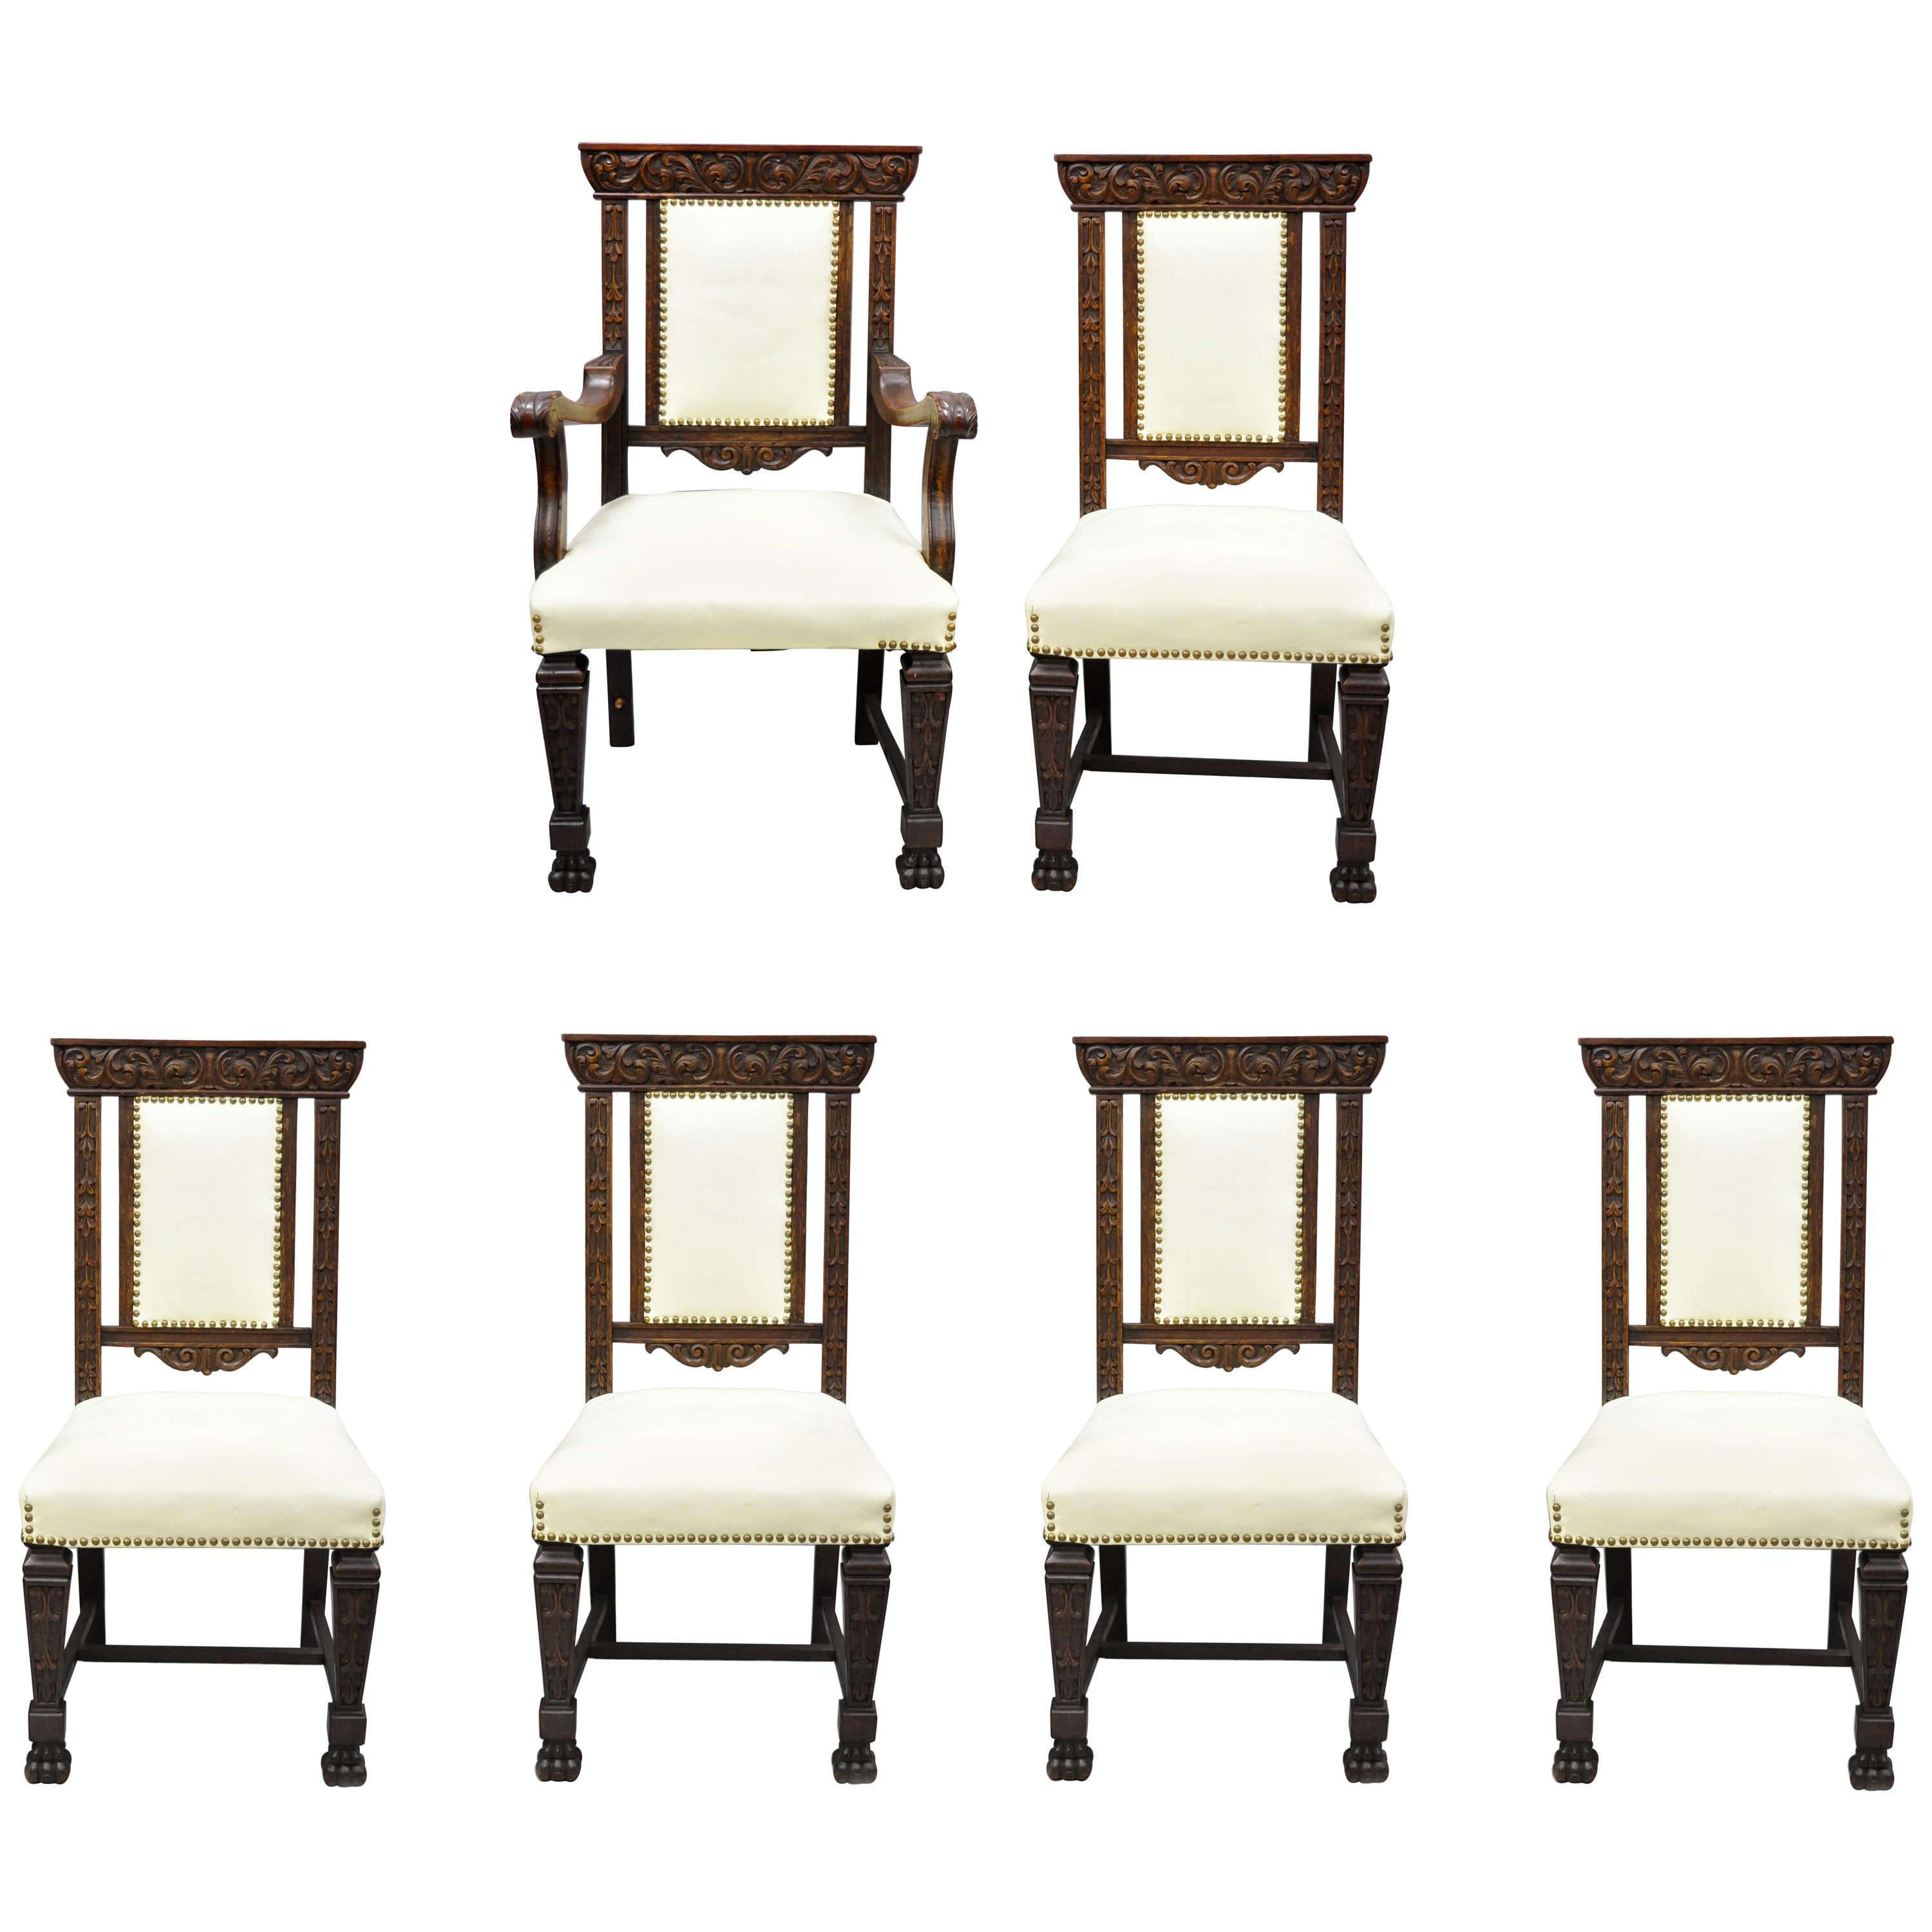 6 chaises de salle à manger italiennes anciennes de la Renaissance en chêne sculpté et rembourrées